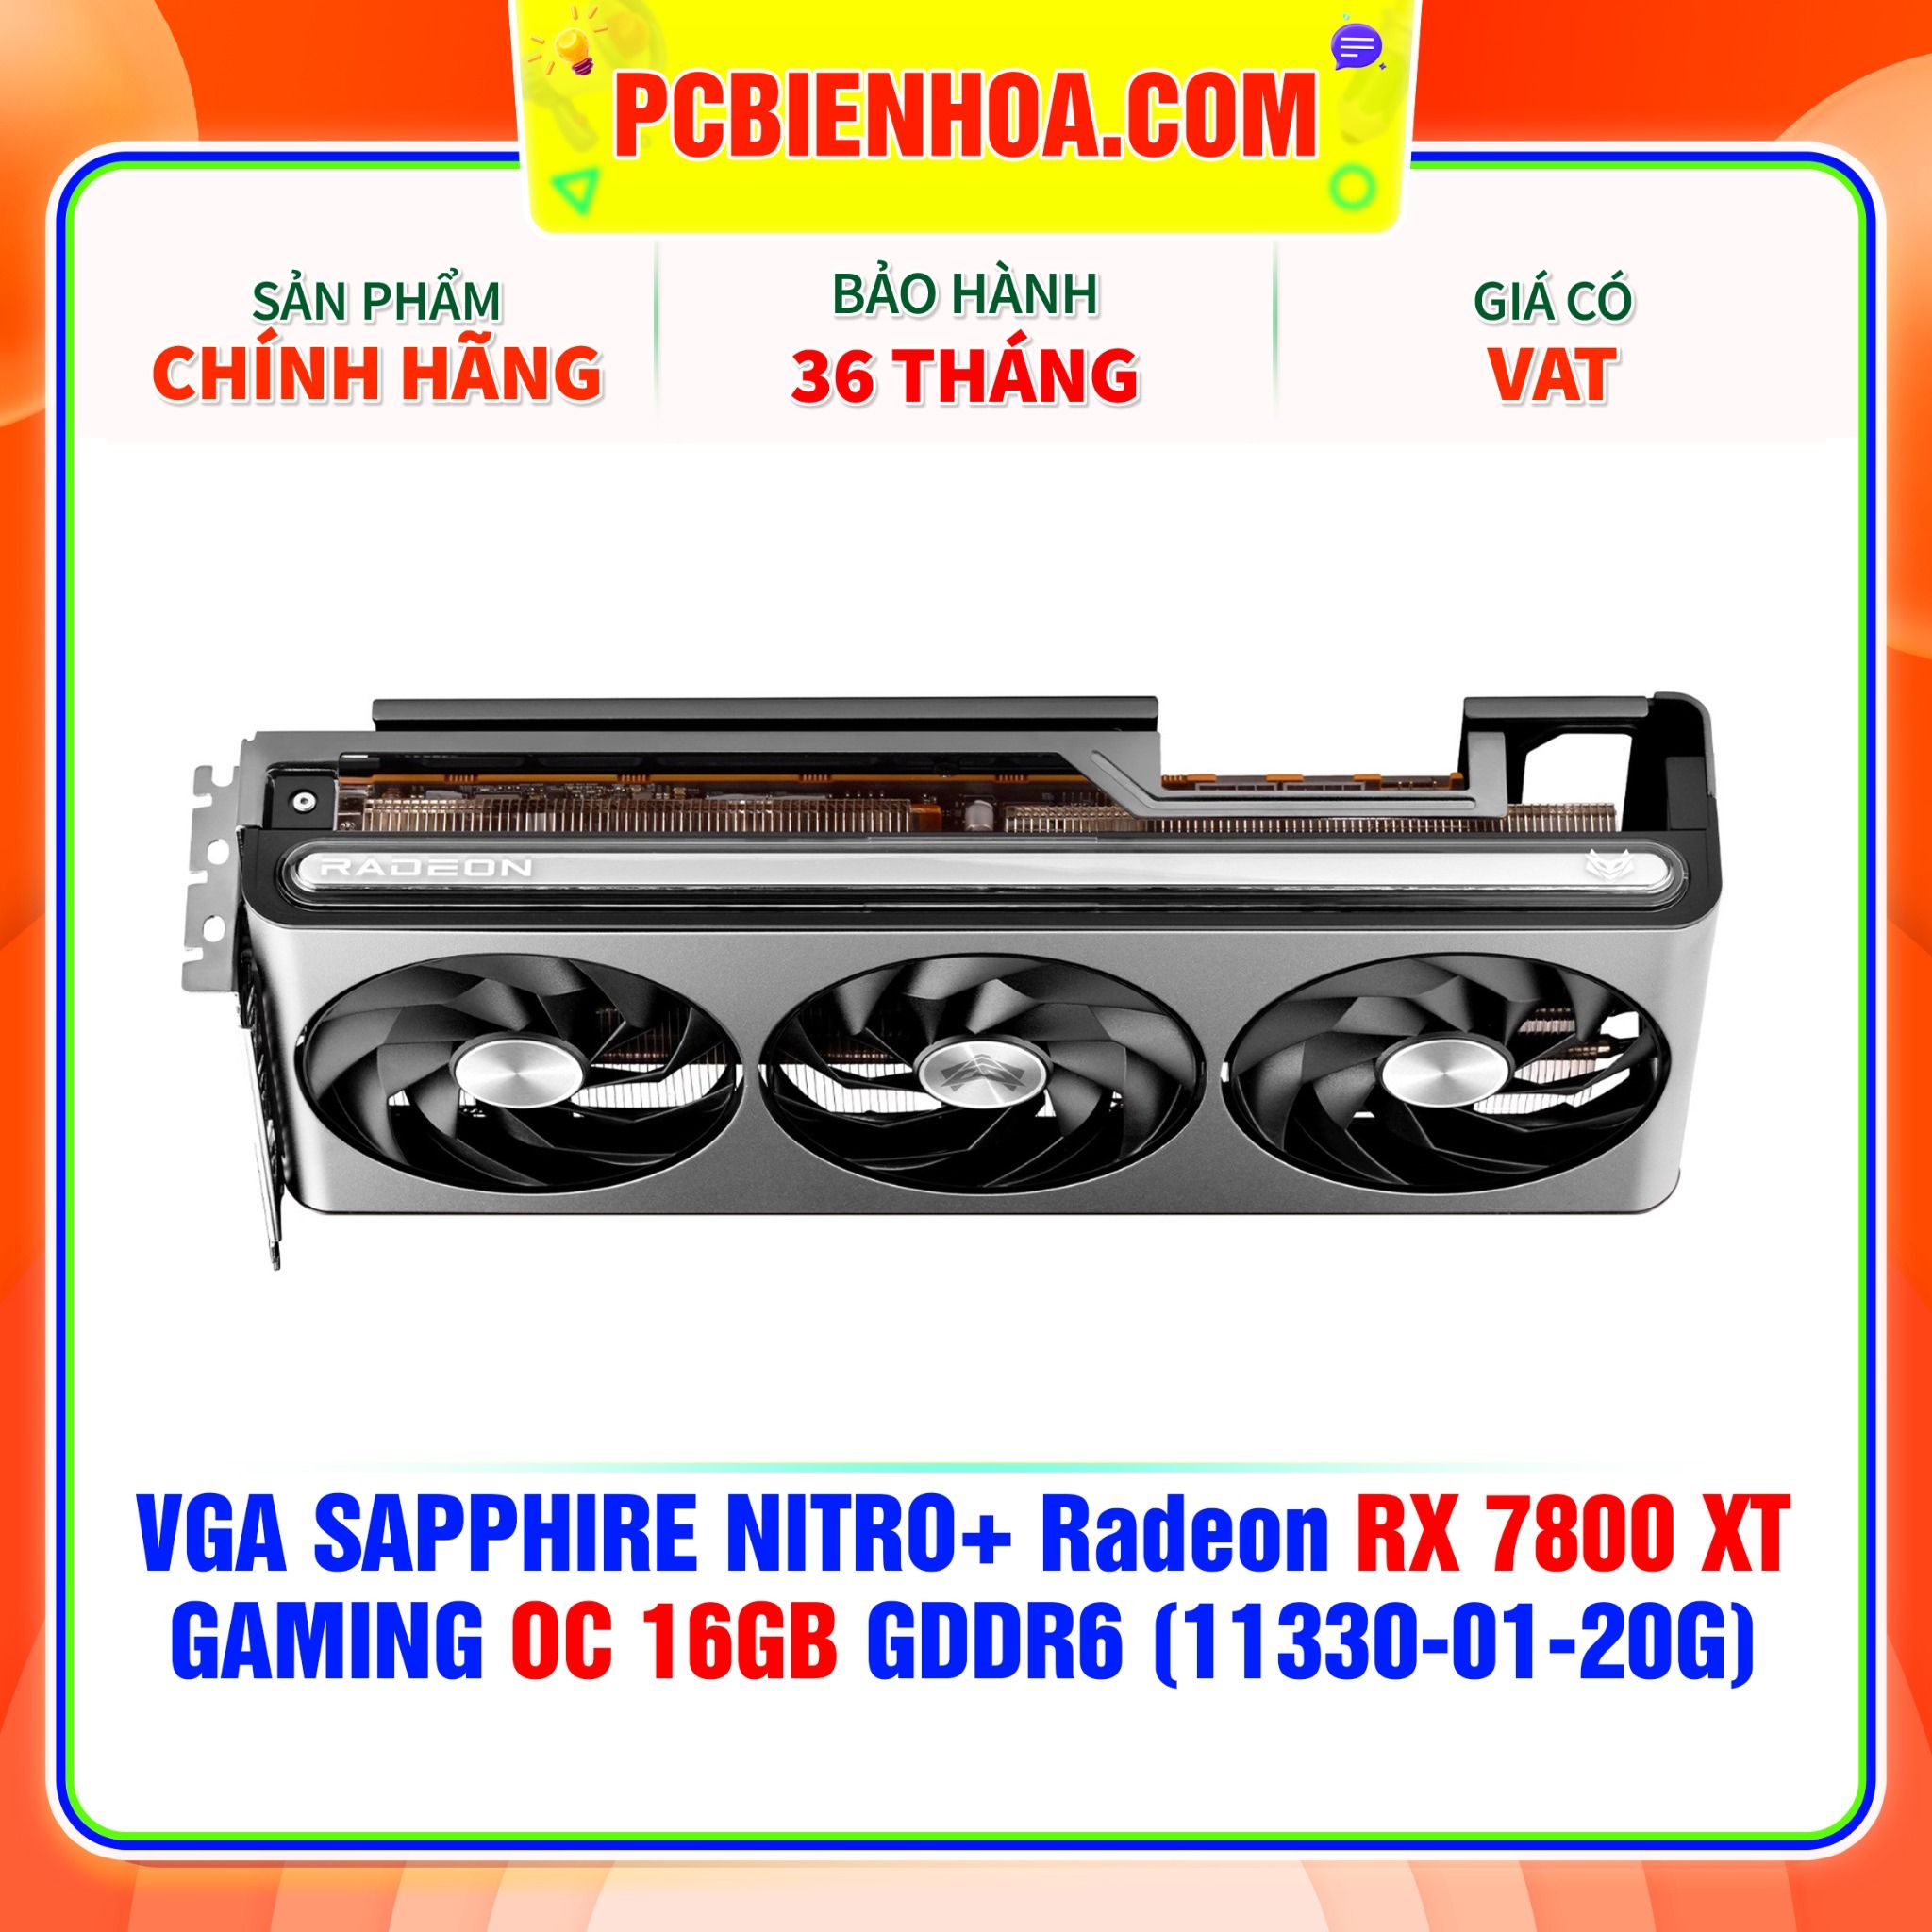  VGA SAPPHIRE NITRO+ Radeon RX 7800 XT GAMING OC 16GB GDDR6 (11330-01-20G) 